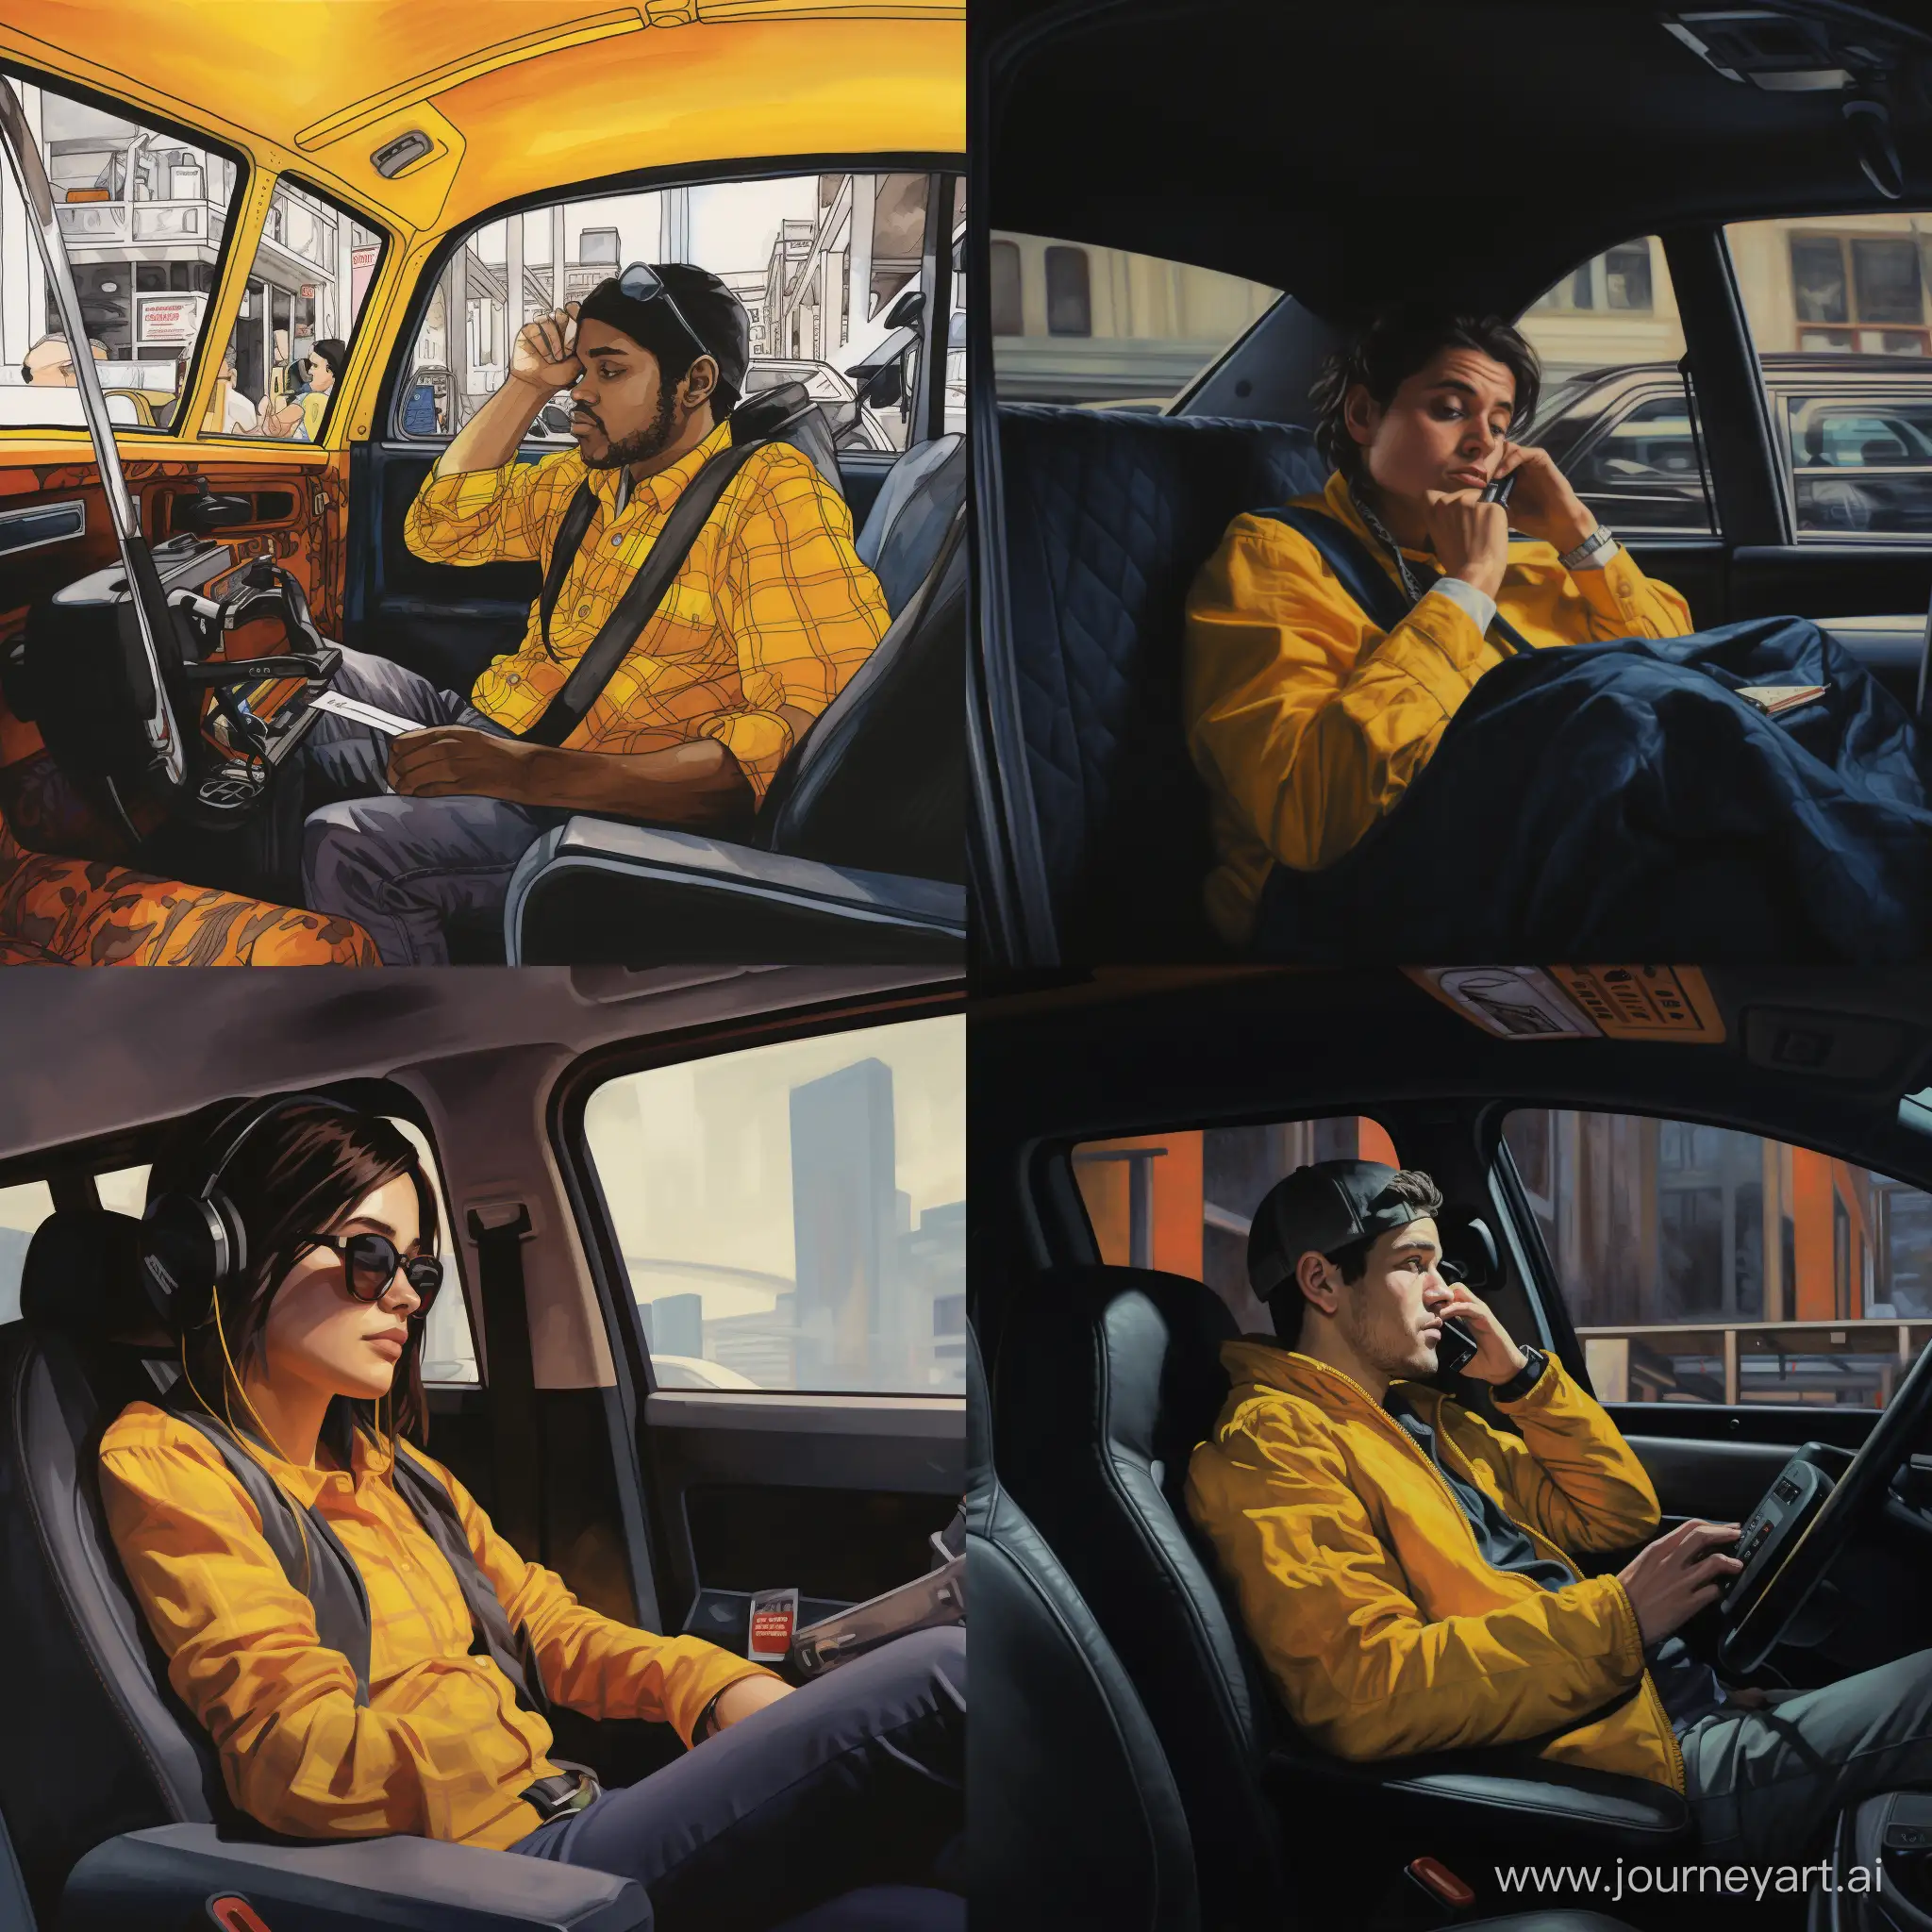  салон такси с пассажиром на заднем сидении сидящем в телефоне